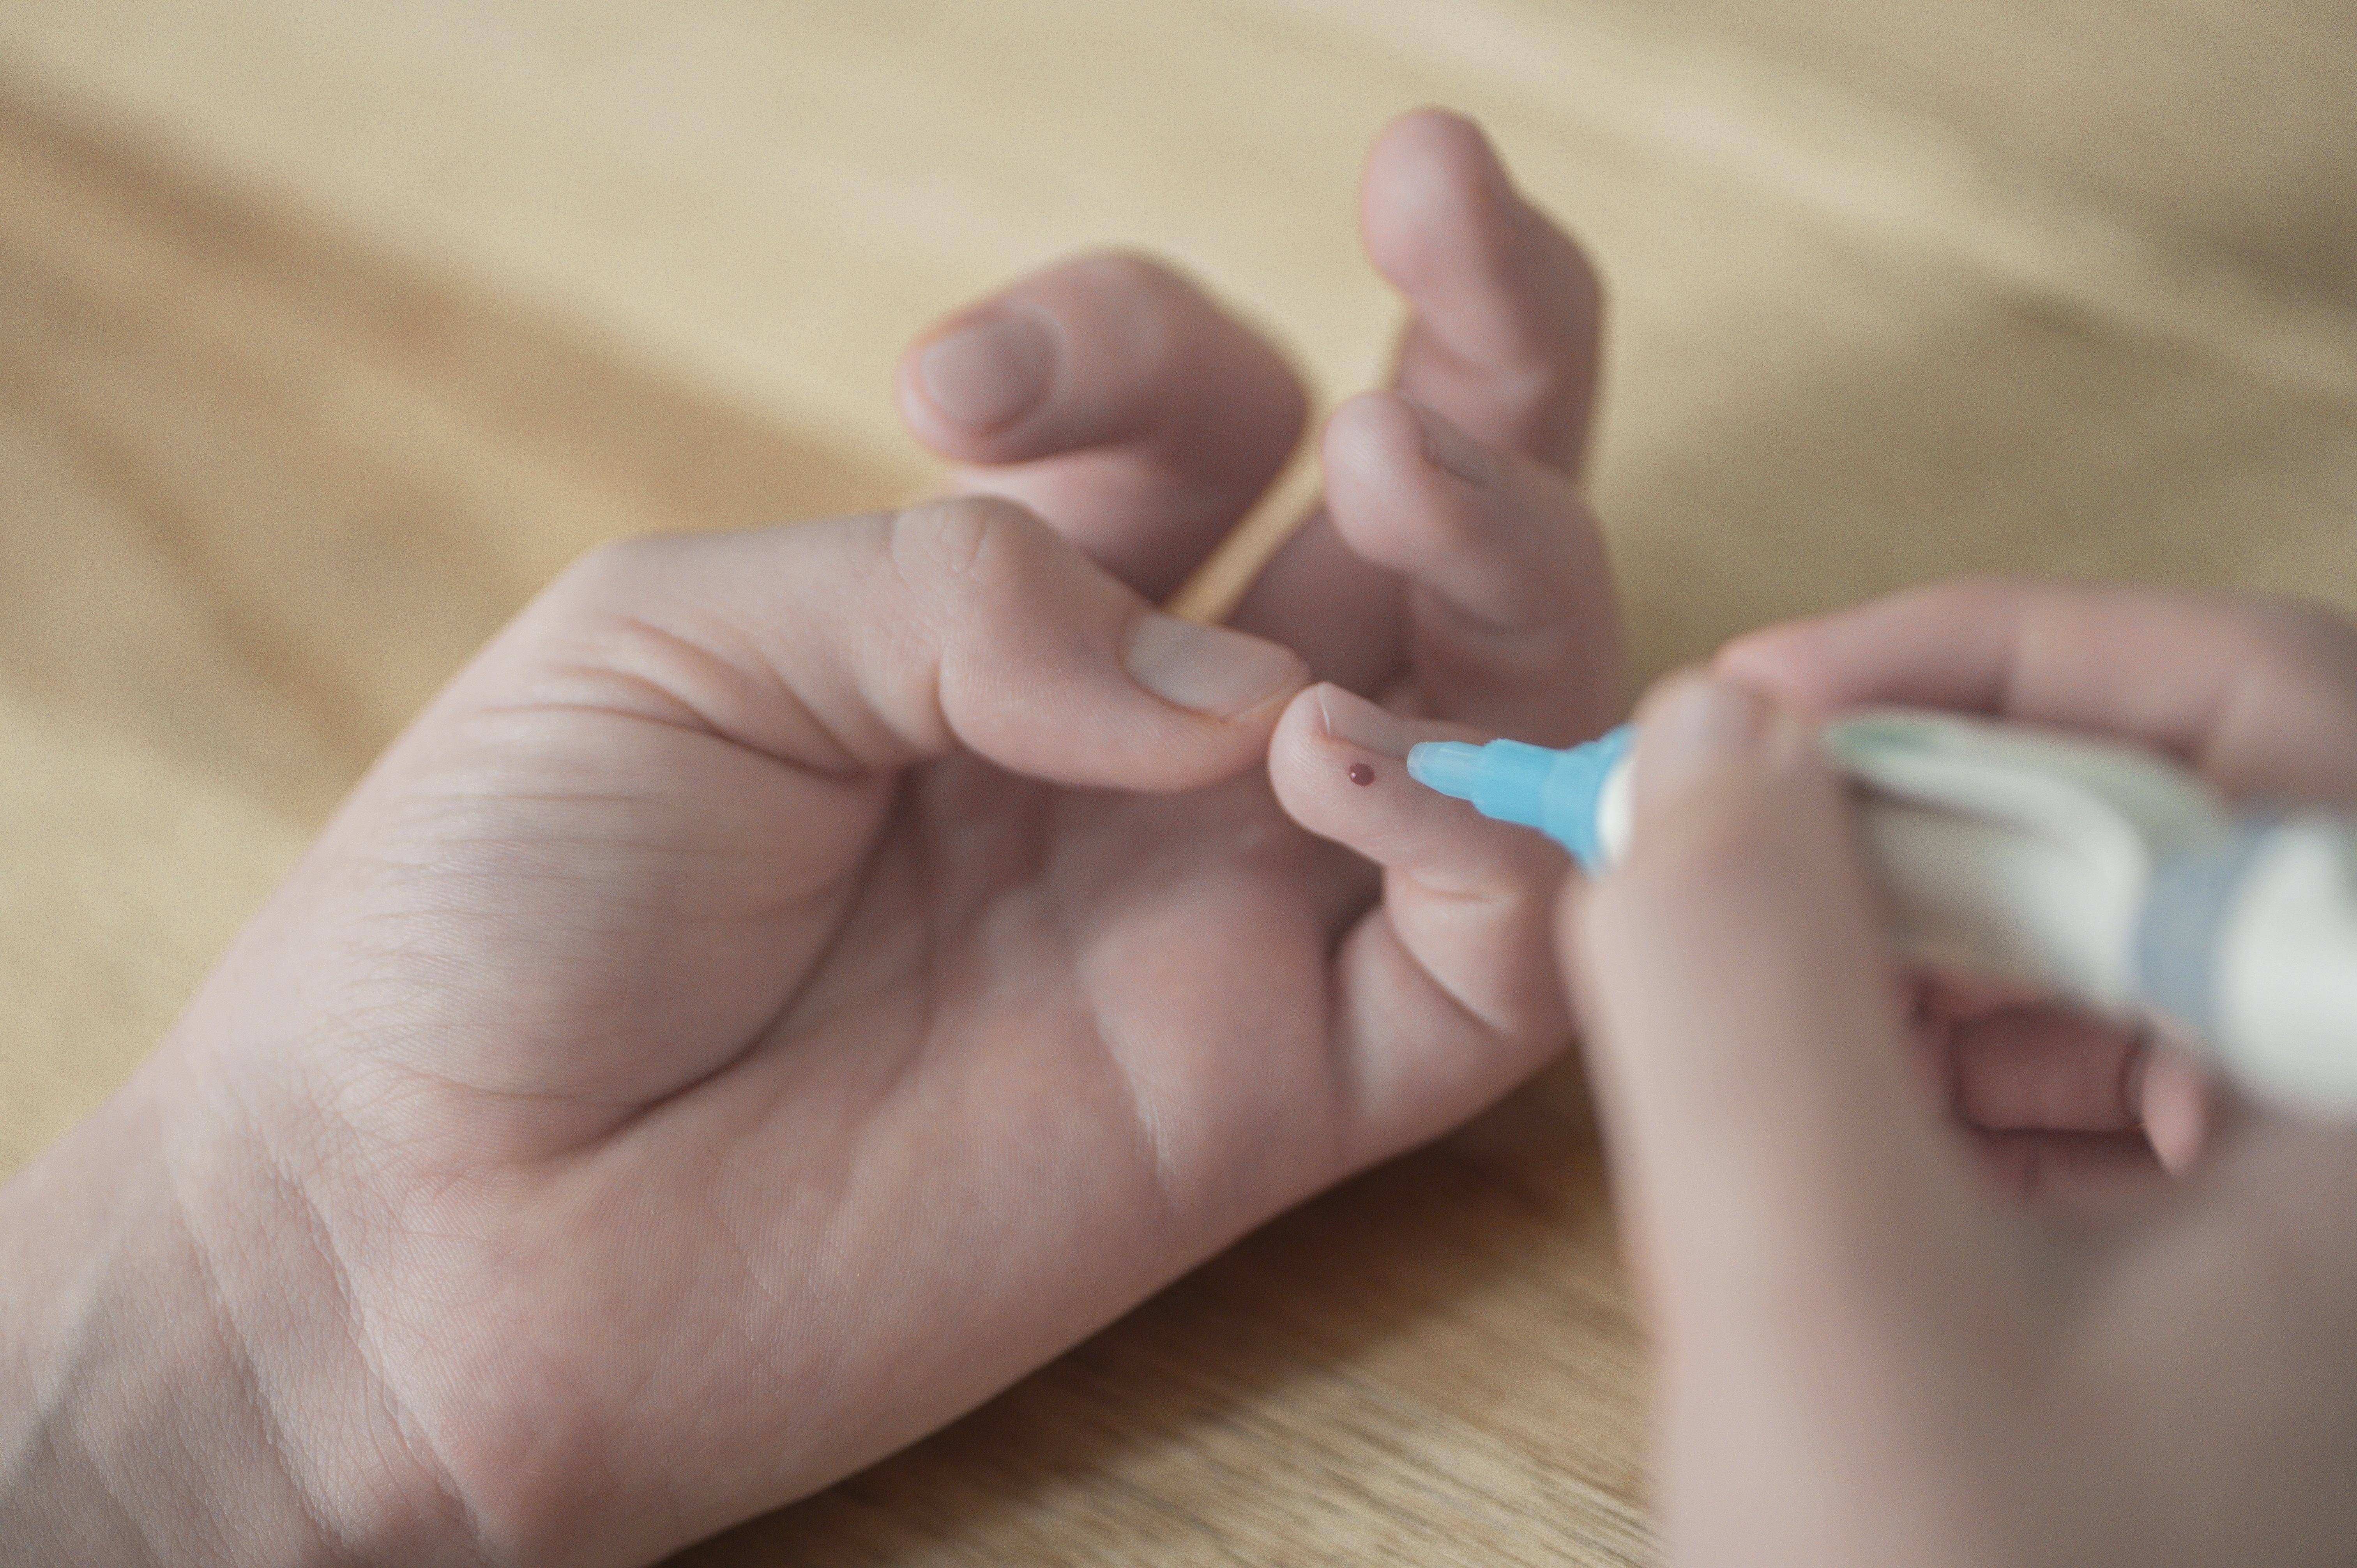 Das Bild zeigt eine Kinderhand, deren kleiner Finger einen Tropfen Blut zeigt. In der rechten Hand hält das Kind die Lanzette als Stechhilfe, hat sich gerade gepiekst, um den Blutzucker zu bestimmen.